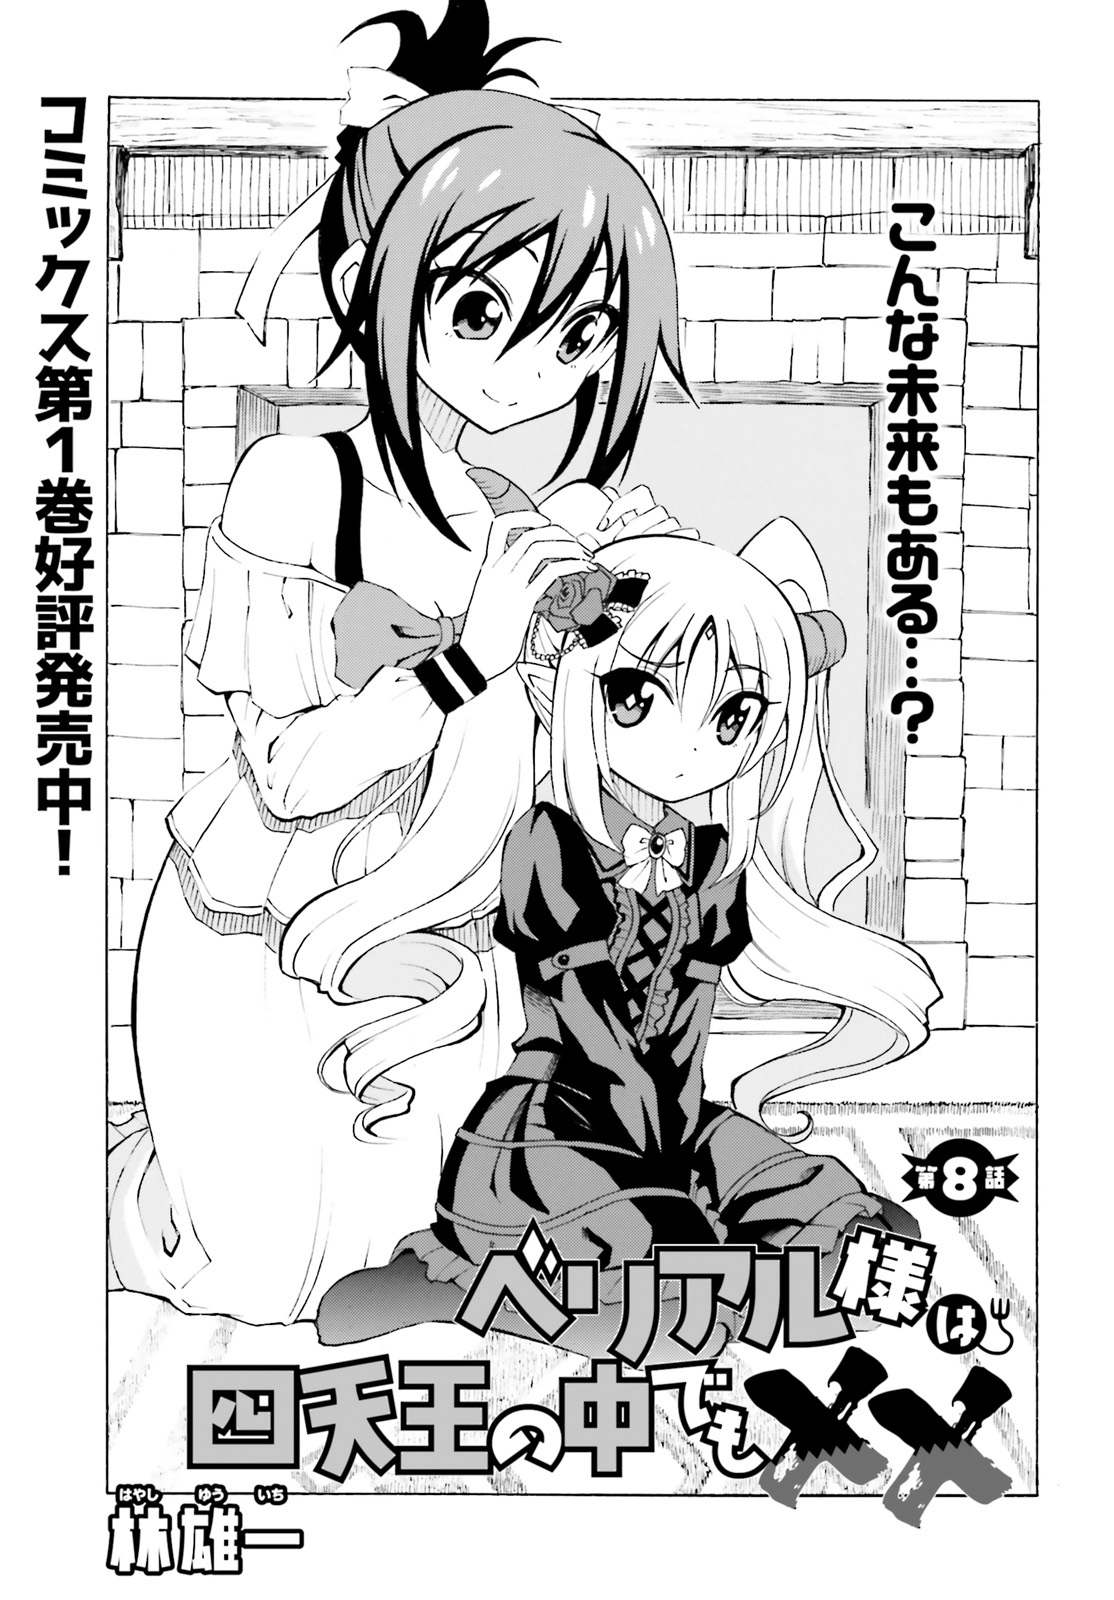 Beriaru-sama wa Shitenno no Naka Demo × × - Chapter 8 - Page 1